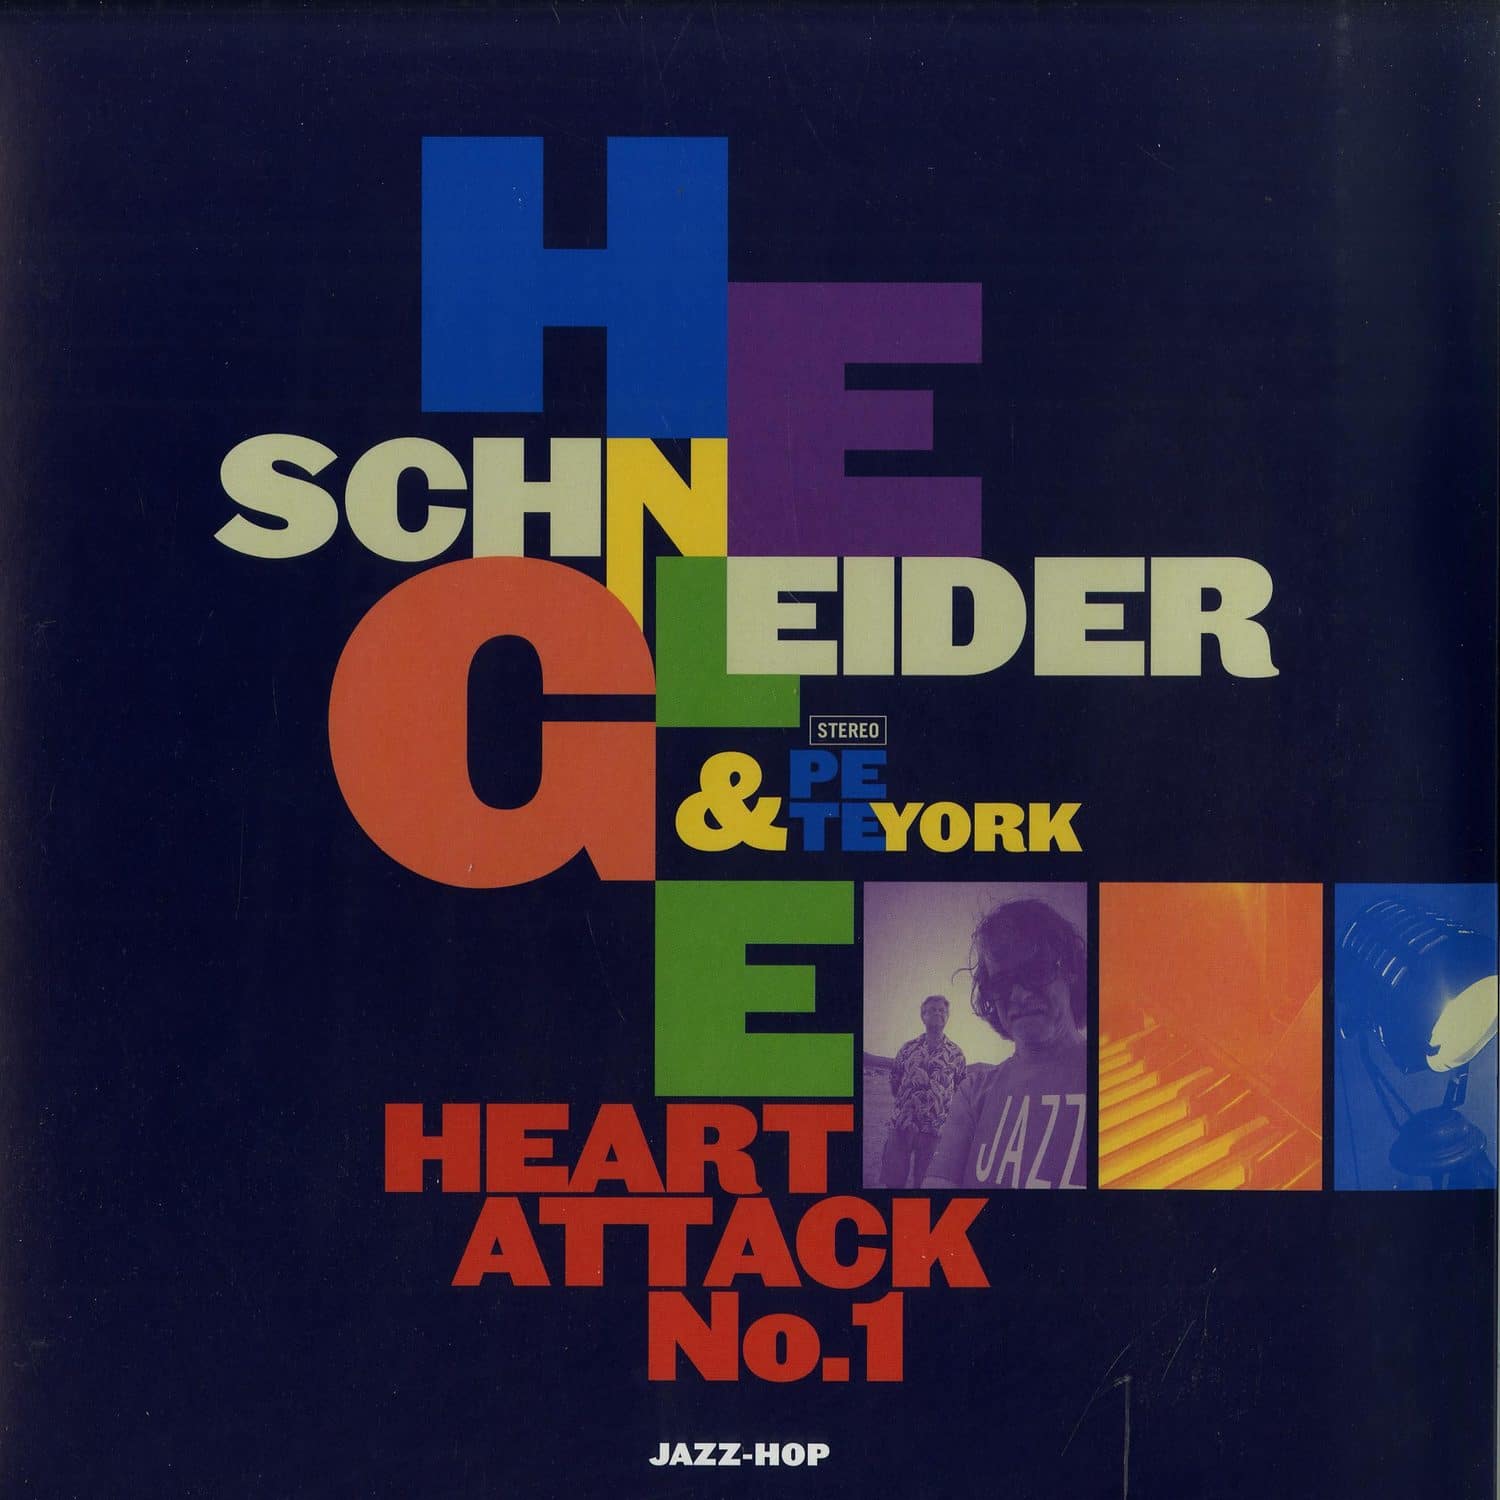 Helge Schneider & Pete York - HEART ATTACK NO. 1 